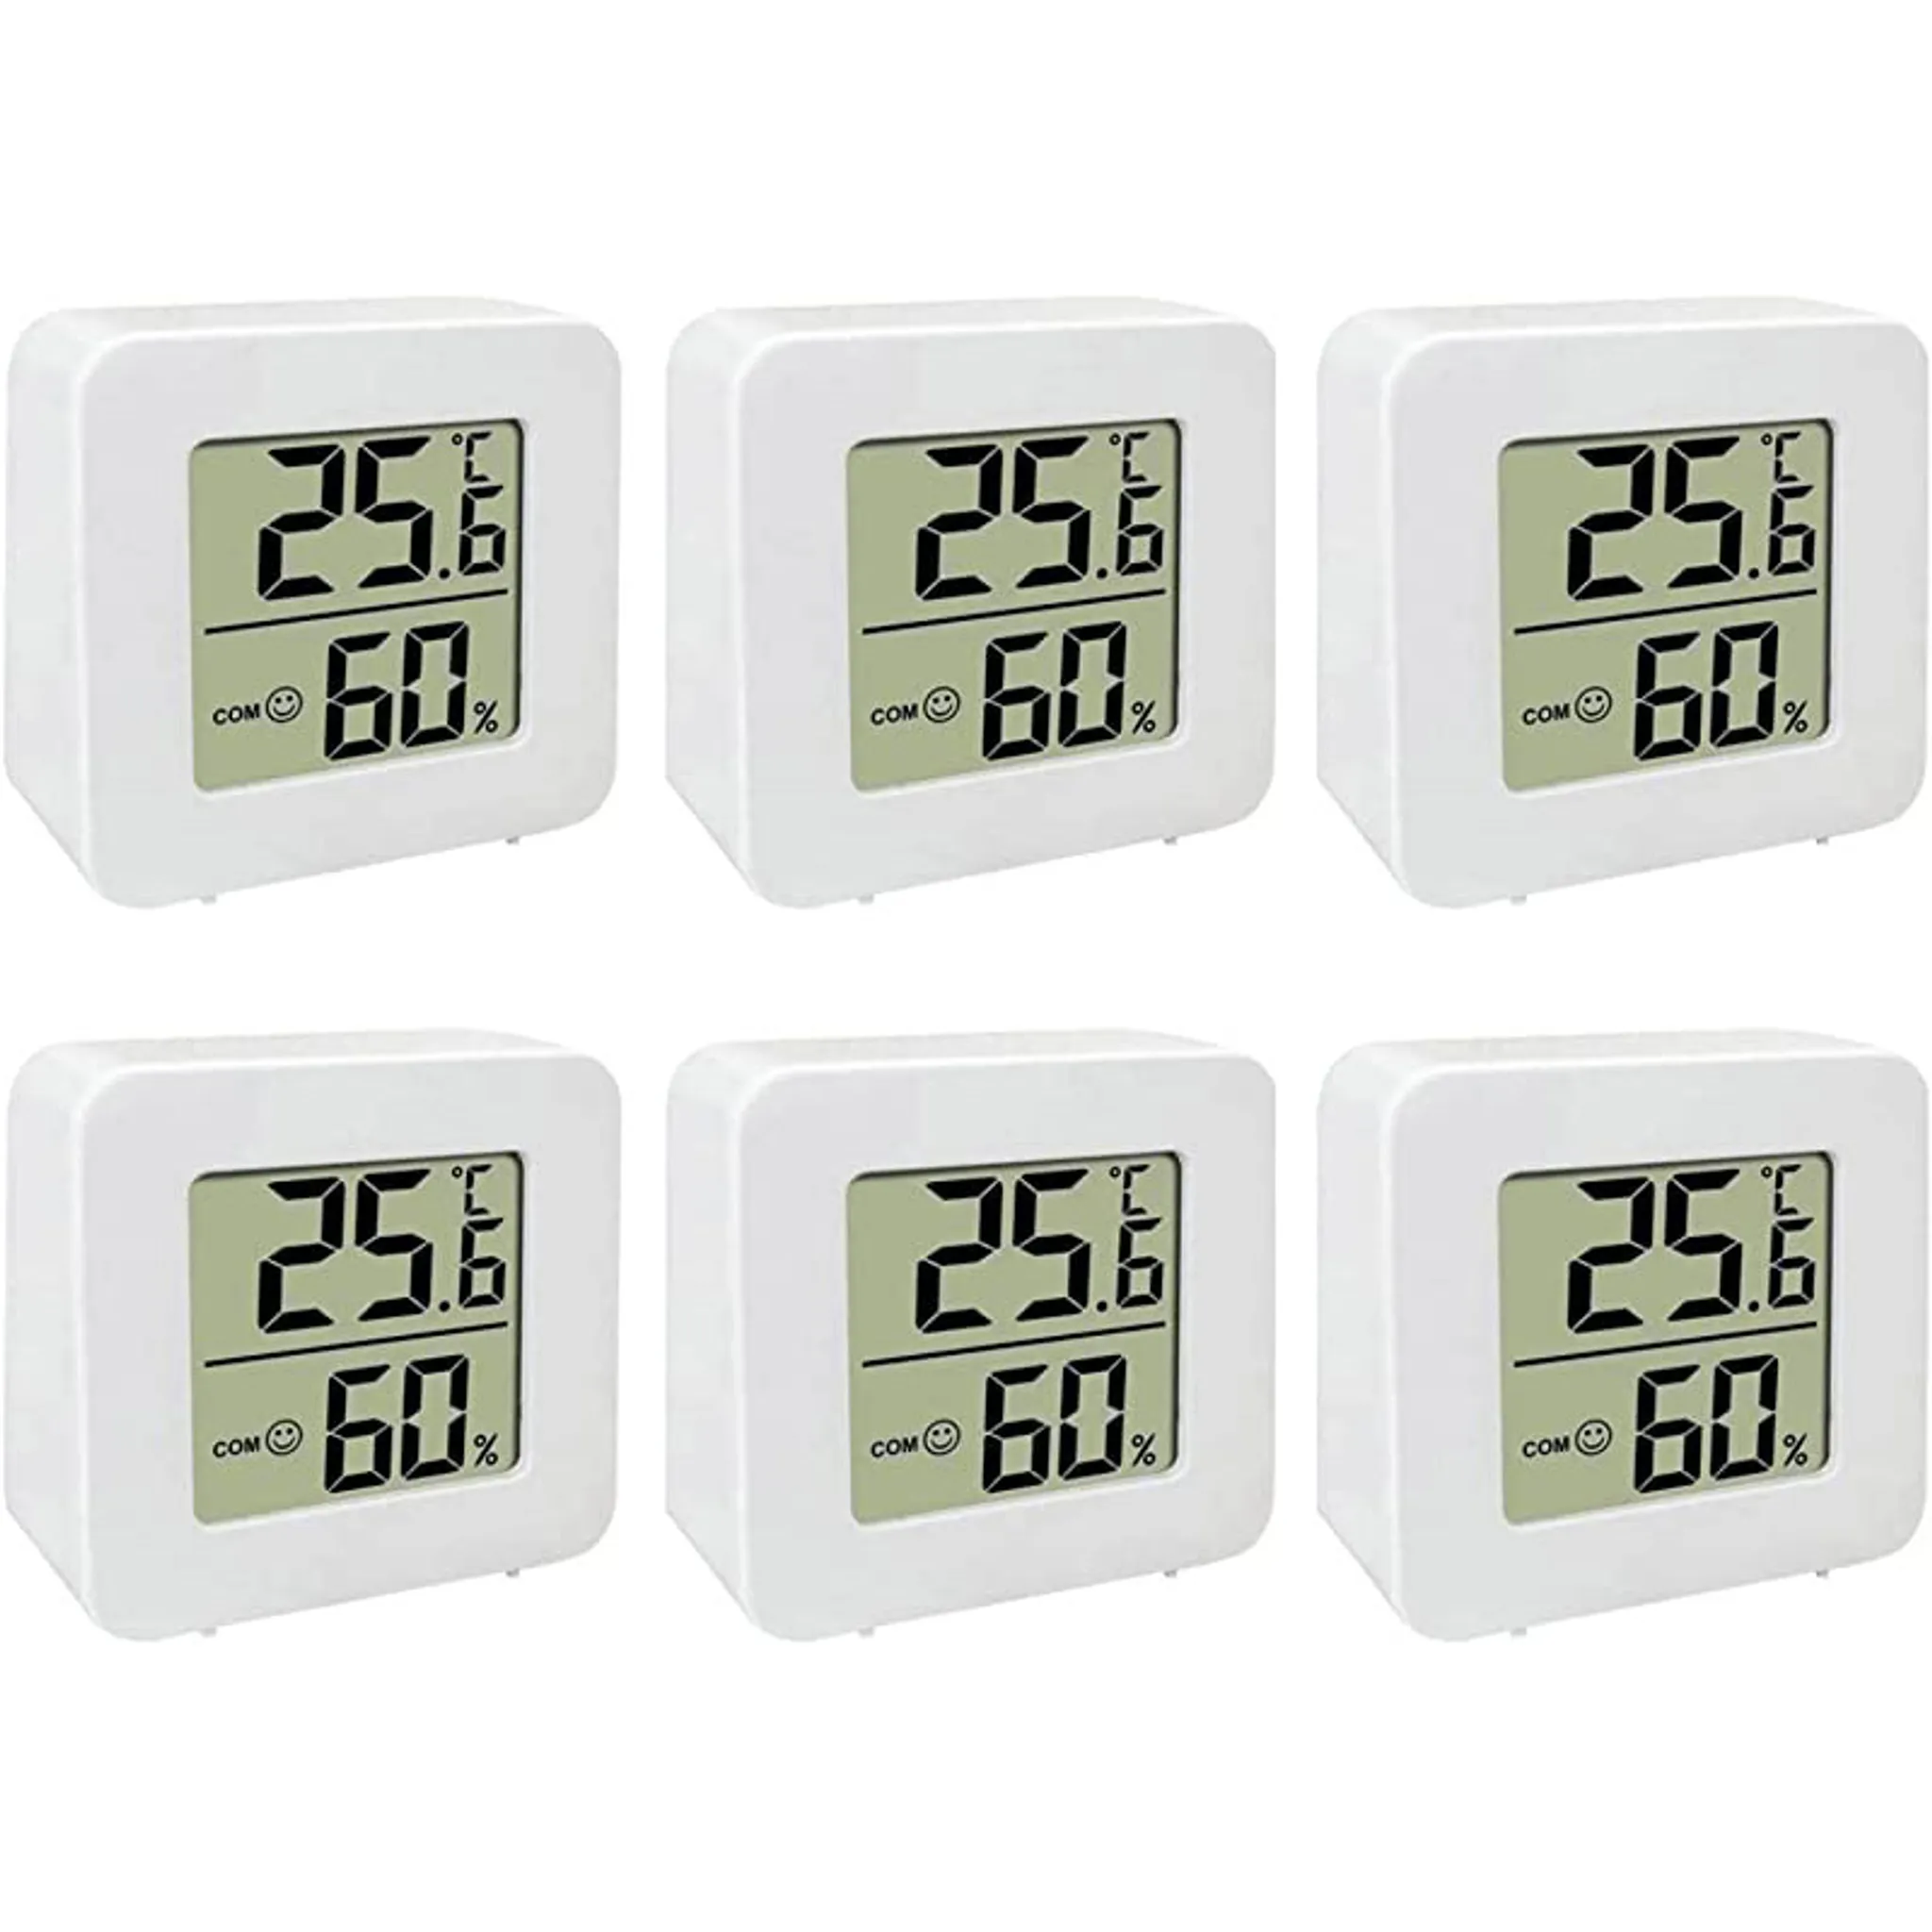 6 Stück Thermometer für Innenräume, Raumthermometer Digital Innen, Mini LCD Digital  Thermometer Hygrometer